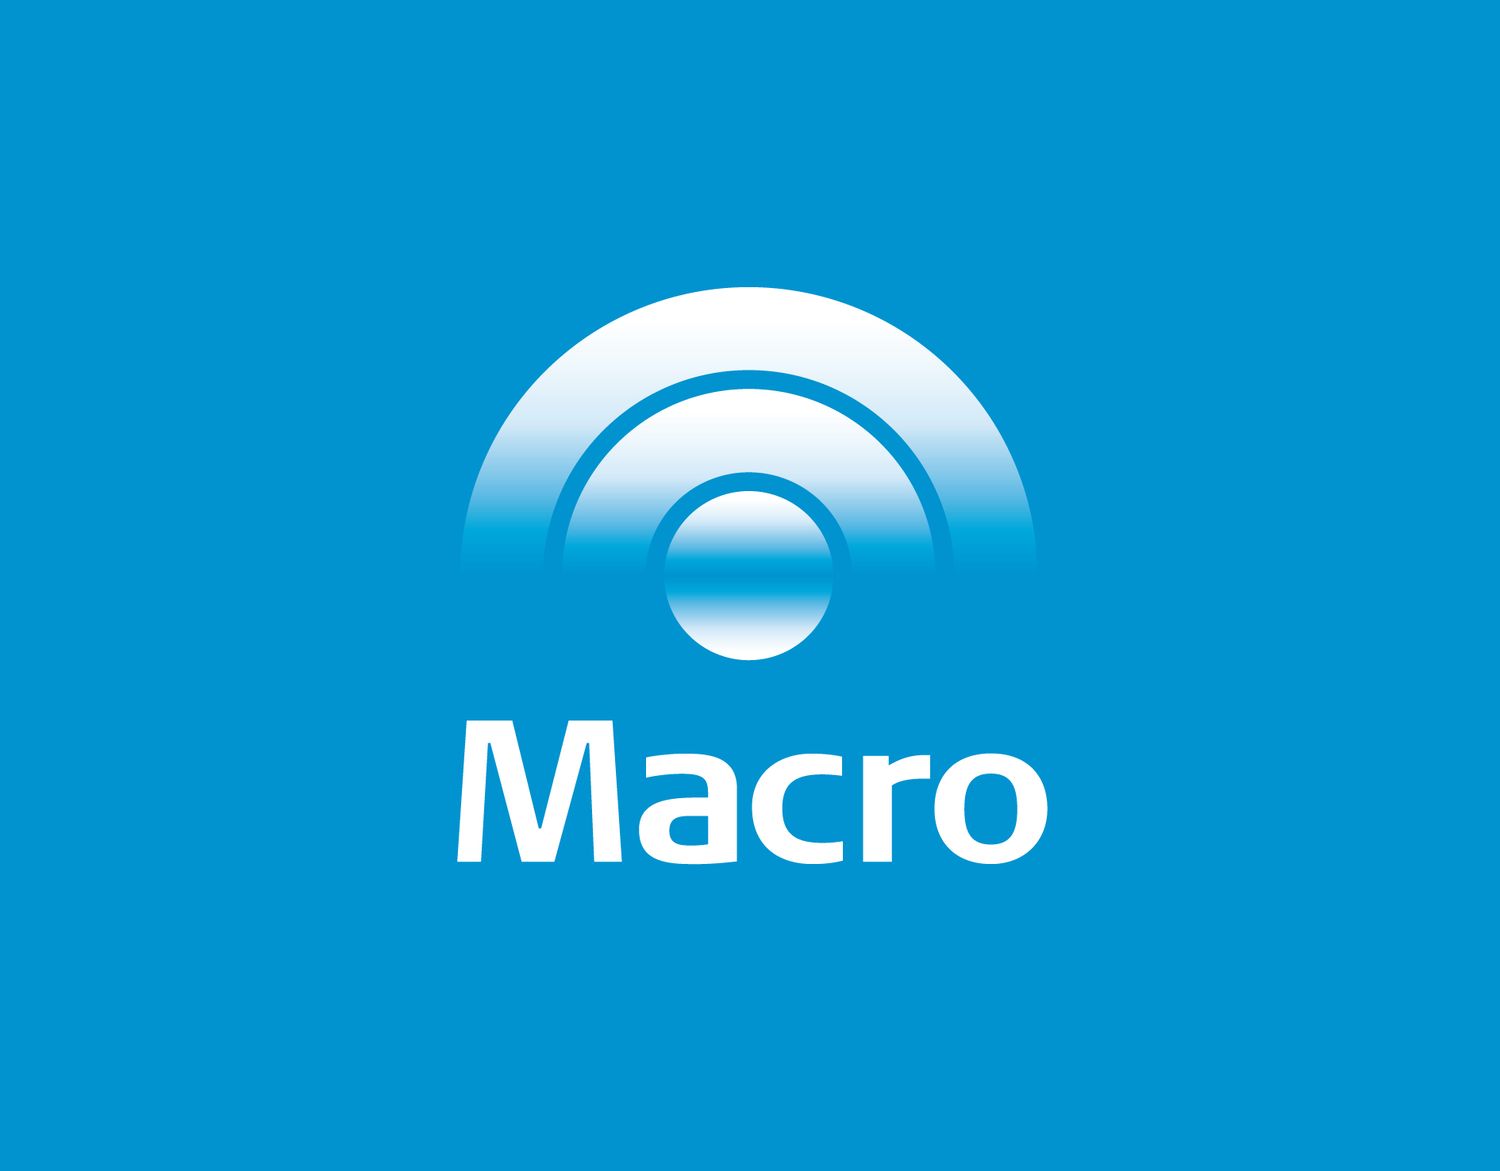 Banco Macro: Nuevo aplicativo para dispositivos móviles